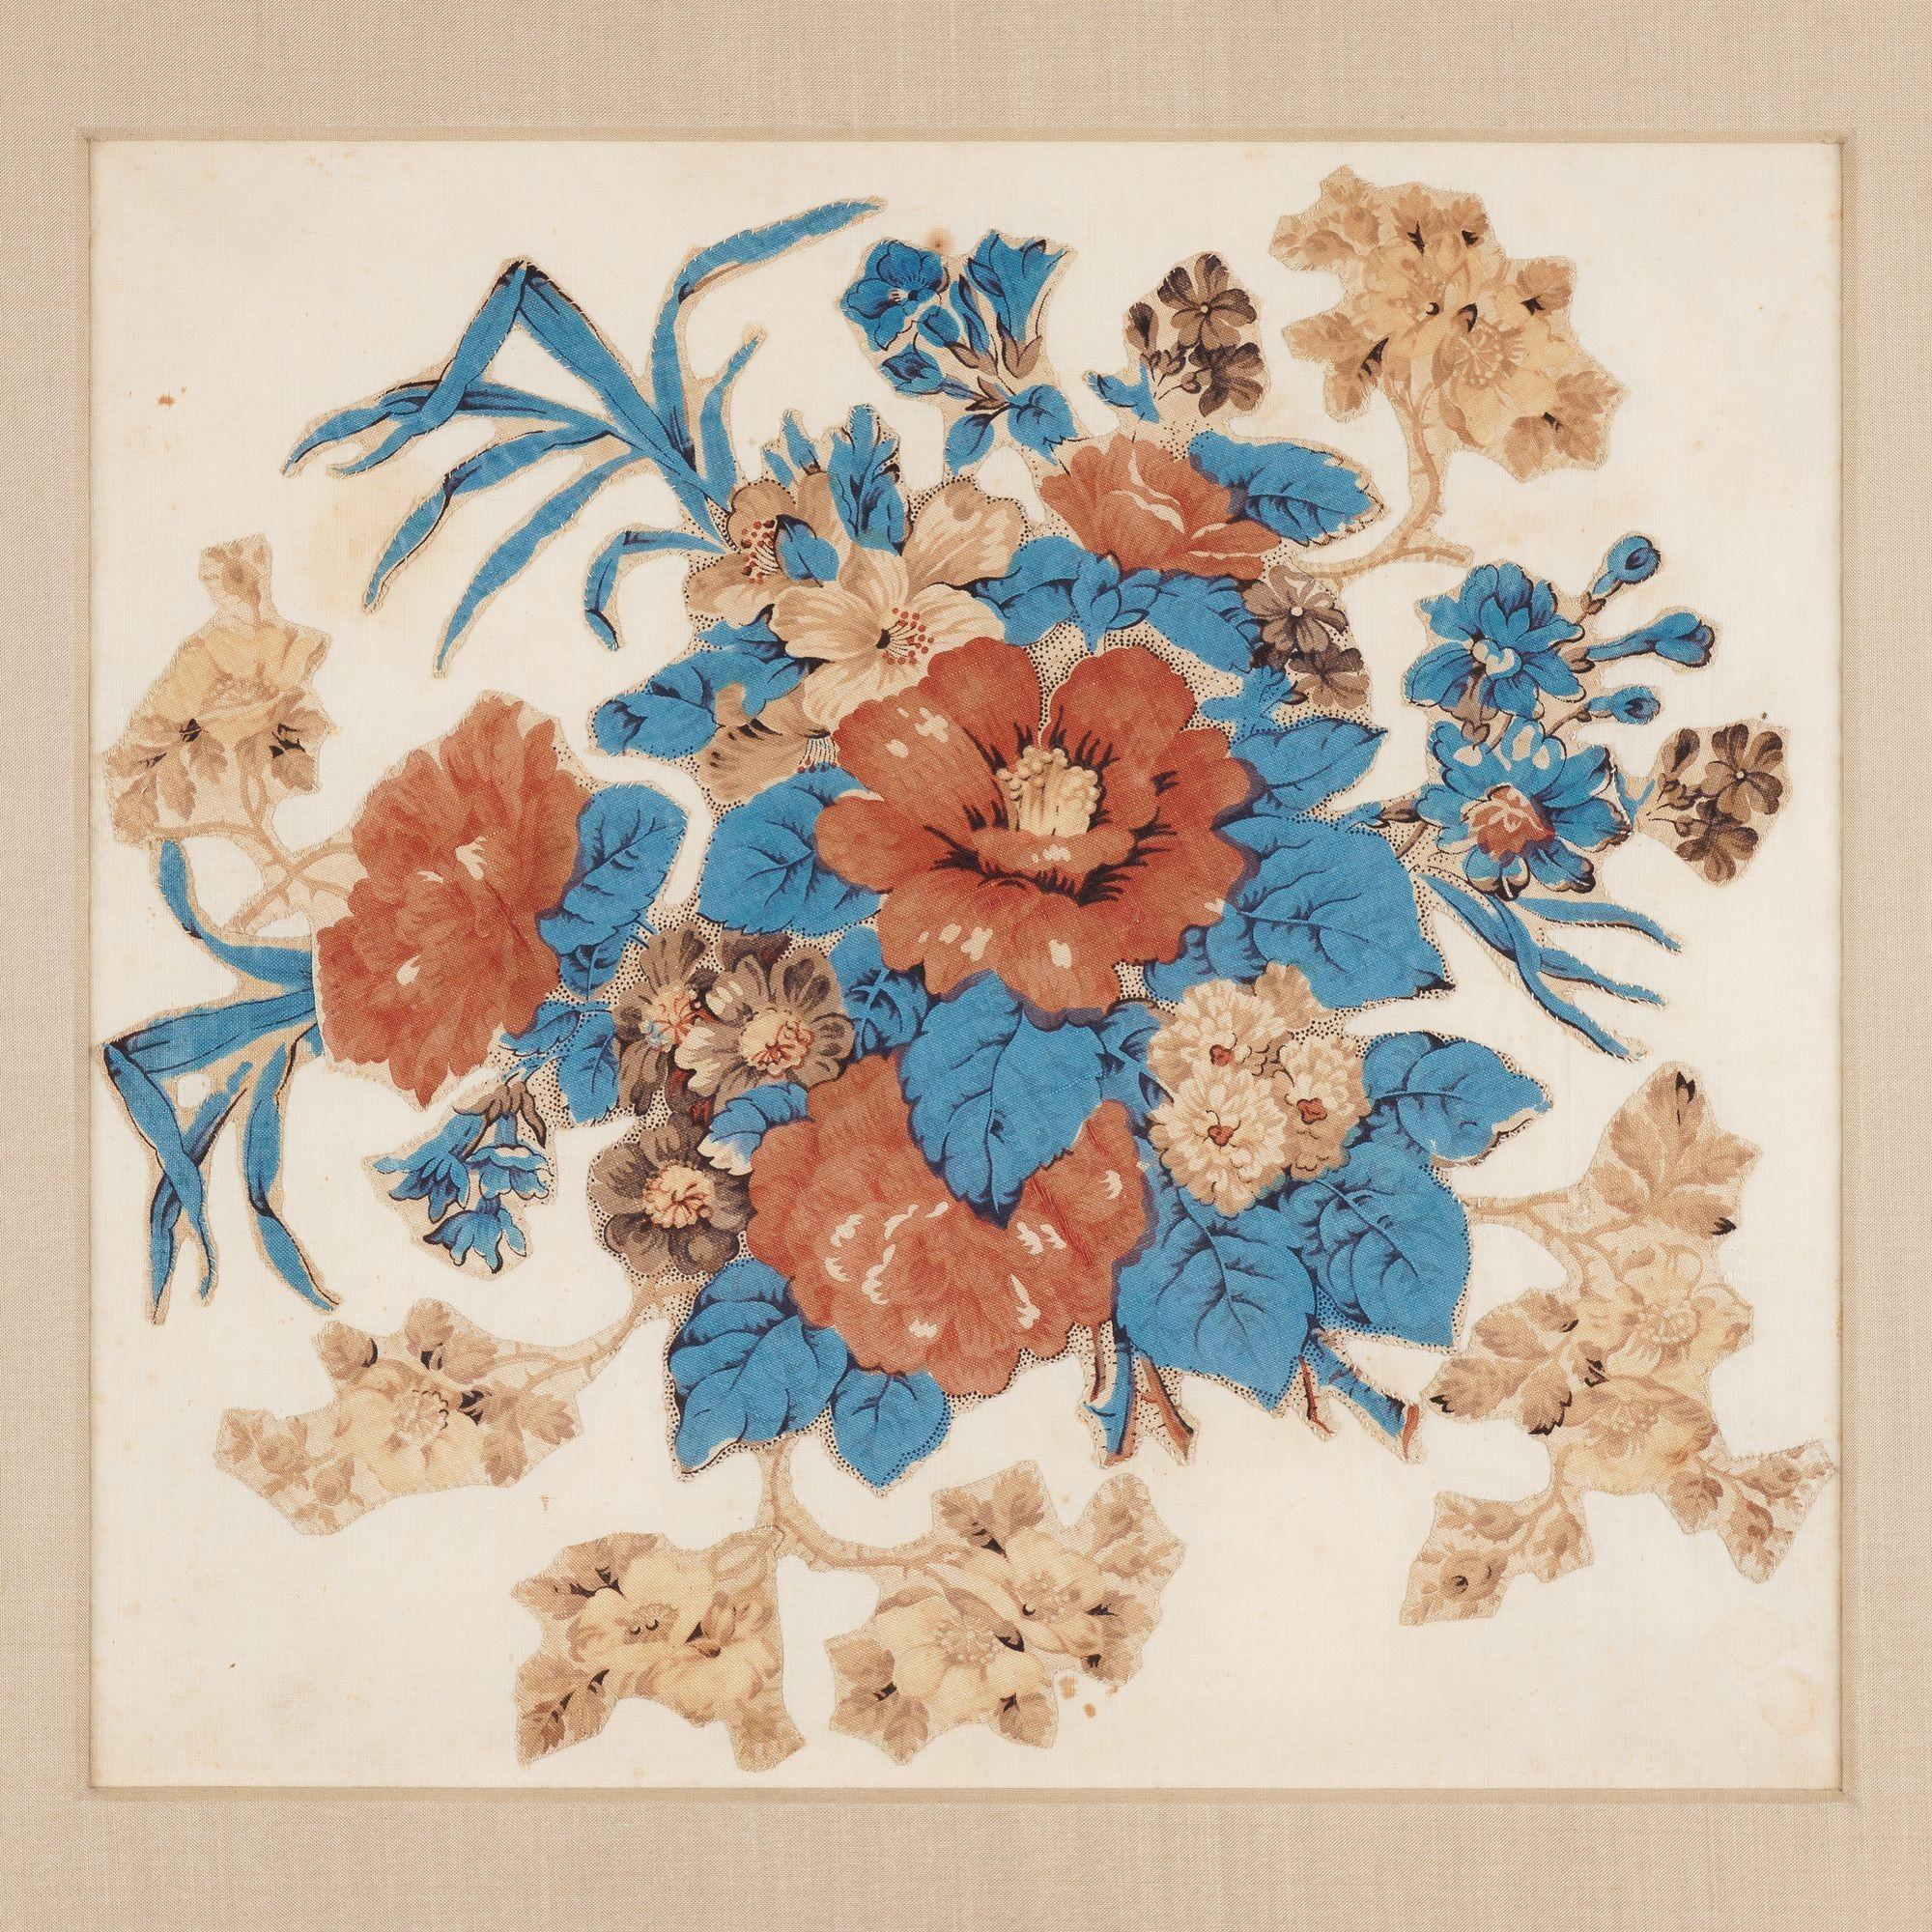 Bouquet floral en chintz appliqué, carré de quilt en rouge, bleu, beige et marron. Encadré avec un passe-partout en soie dans un cadre en plexiglas filtrant les UV.

Américain, vers 1825-50.